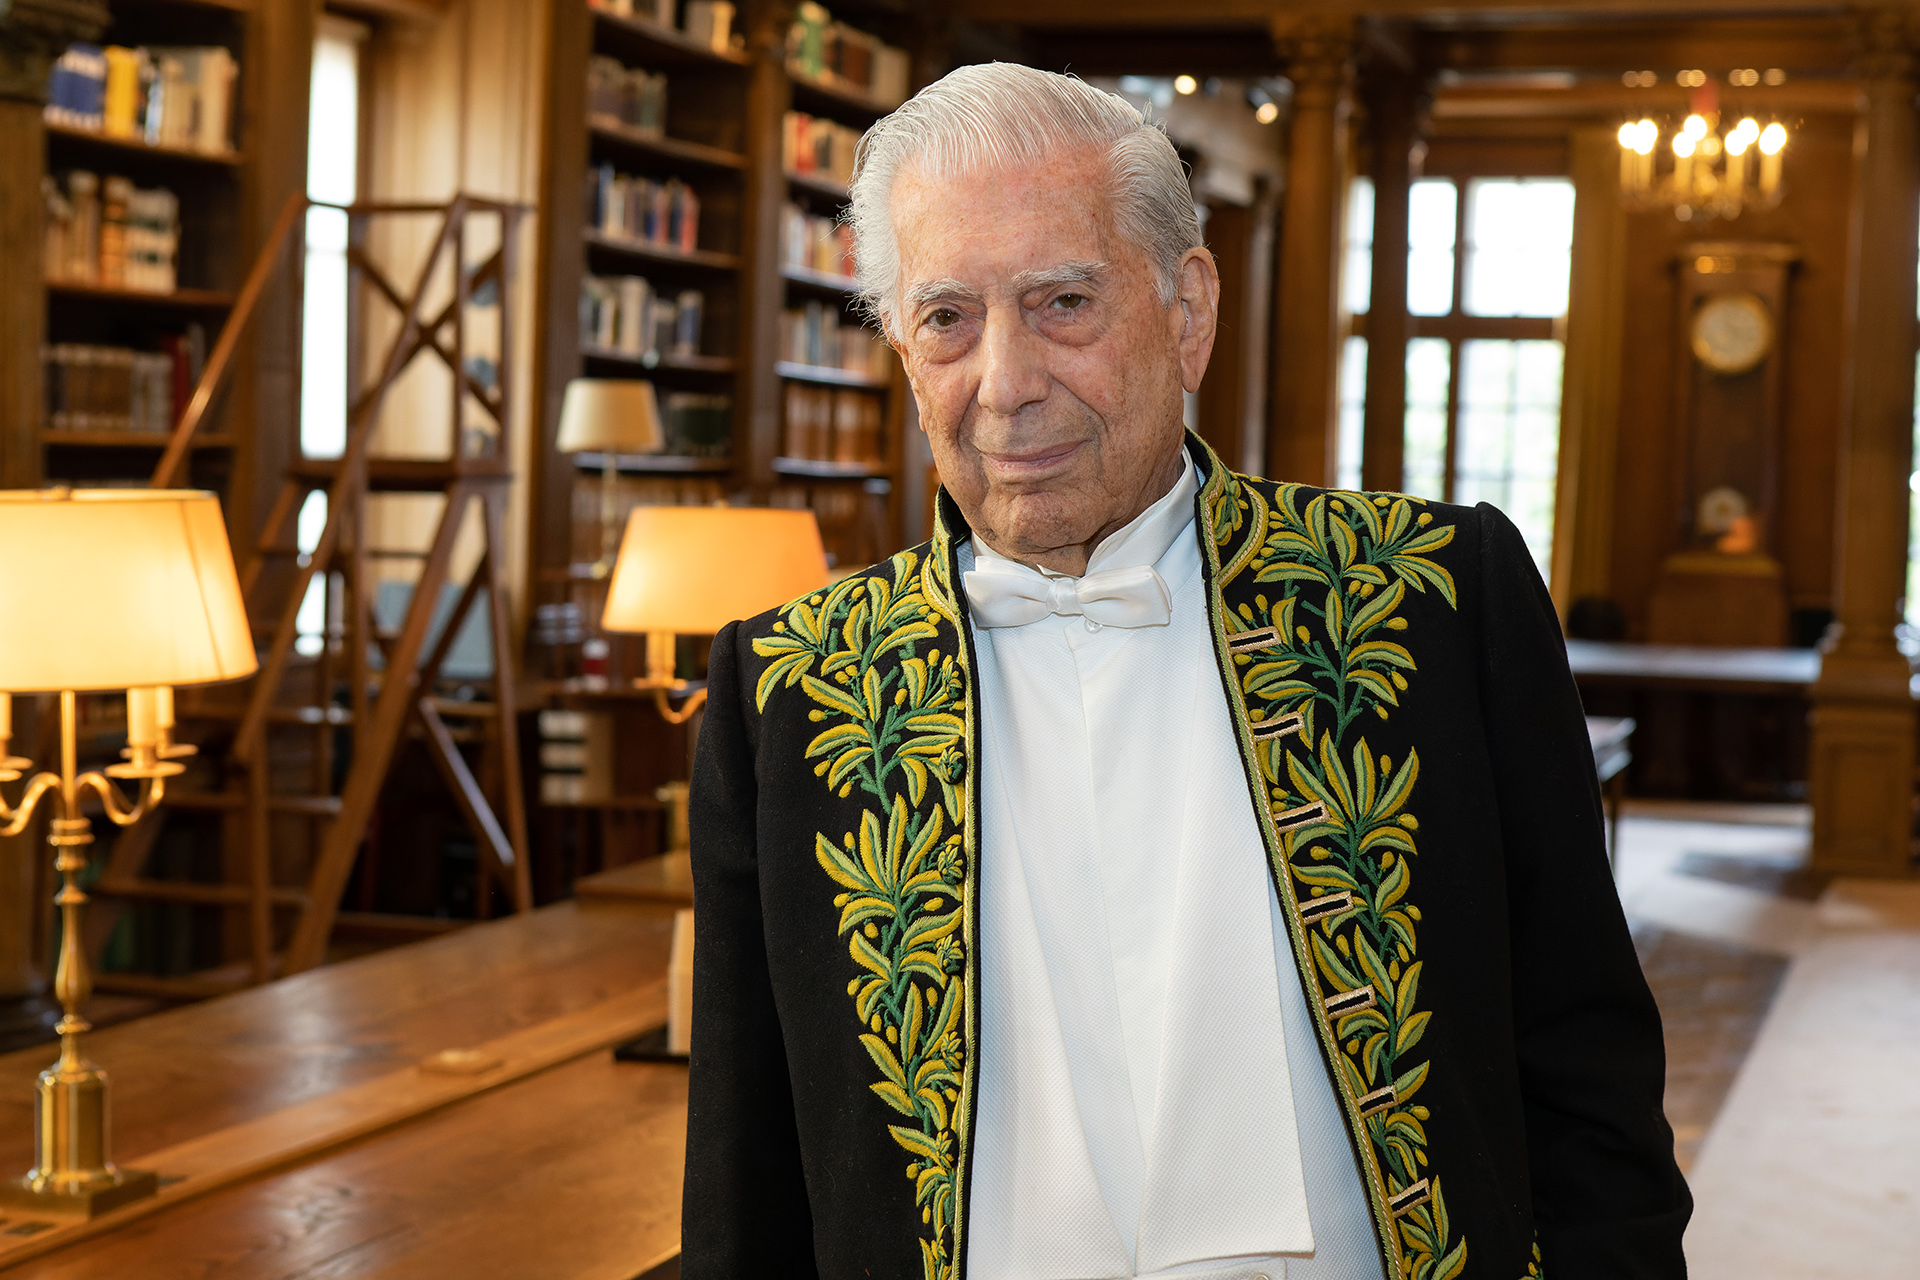 Vargas Llosa ingresó hace apenas unos meses a la Academia Francesa. Se trata de un reconocimiento muy poco frecuente para un autor en castellano, especialmente siendo latinoamericano. Crédito: Academia Francesa